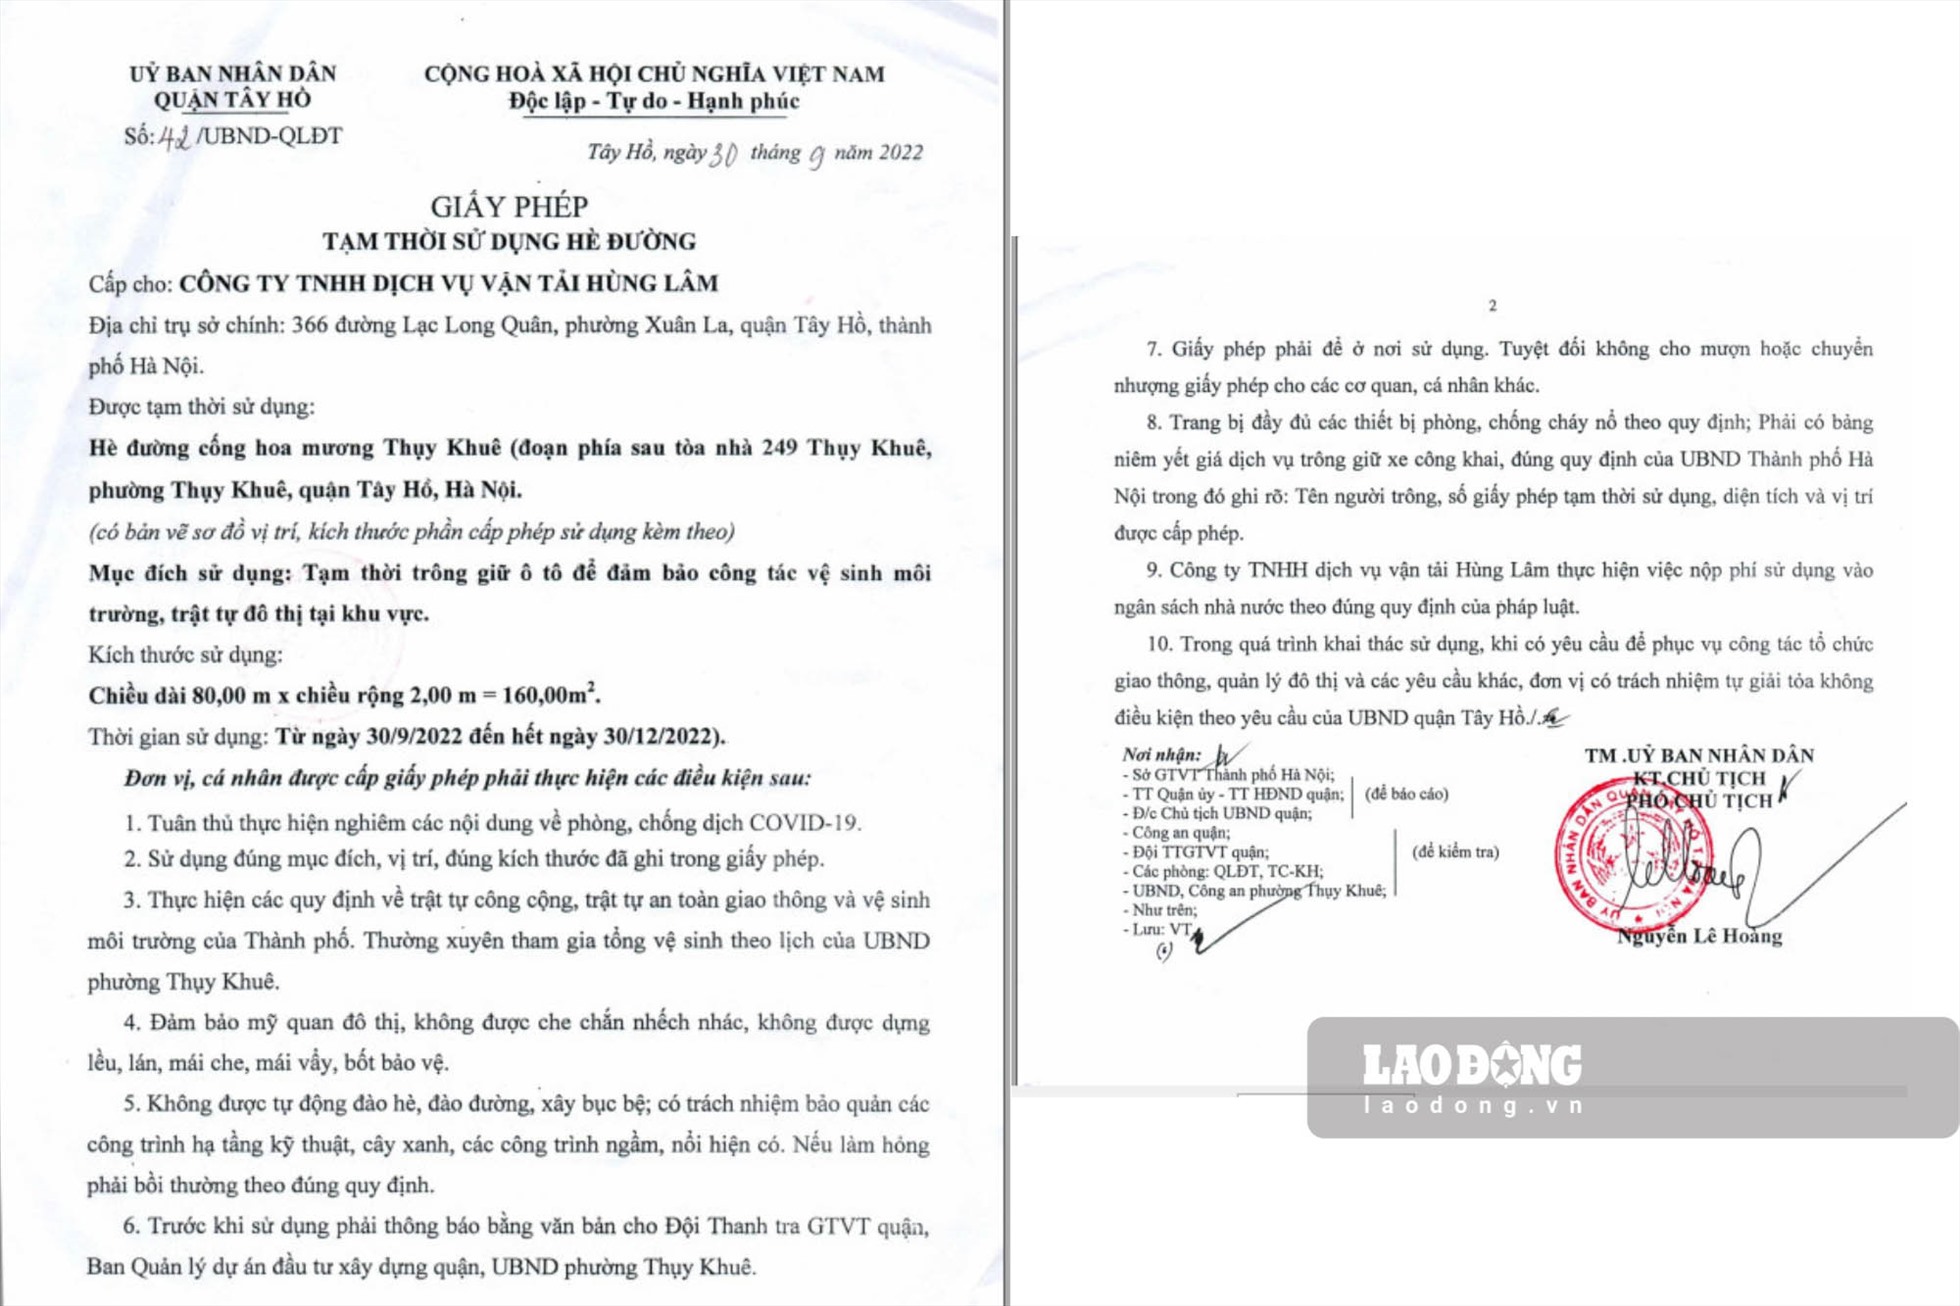 Ngày 30.9.2022, UBND quận Tây Hồ Nguyễn Lê Hoàng ký giấy phép tạm thời sử dụng hè đường cấp cho Công ty TNHH Dịch vụ vận tải Hùng Lâm (Công ty Hùng Lâm), có trụ sở chính ở số 366 đường Lạc Long Quân, phường Xuân La, quận Tây Hồ, TP Hà Nội.